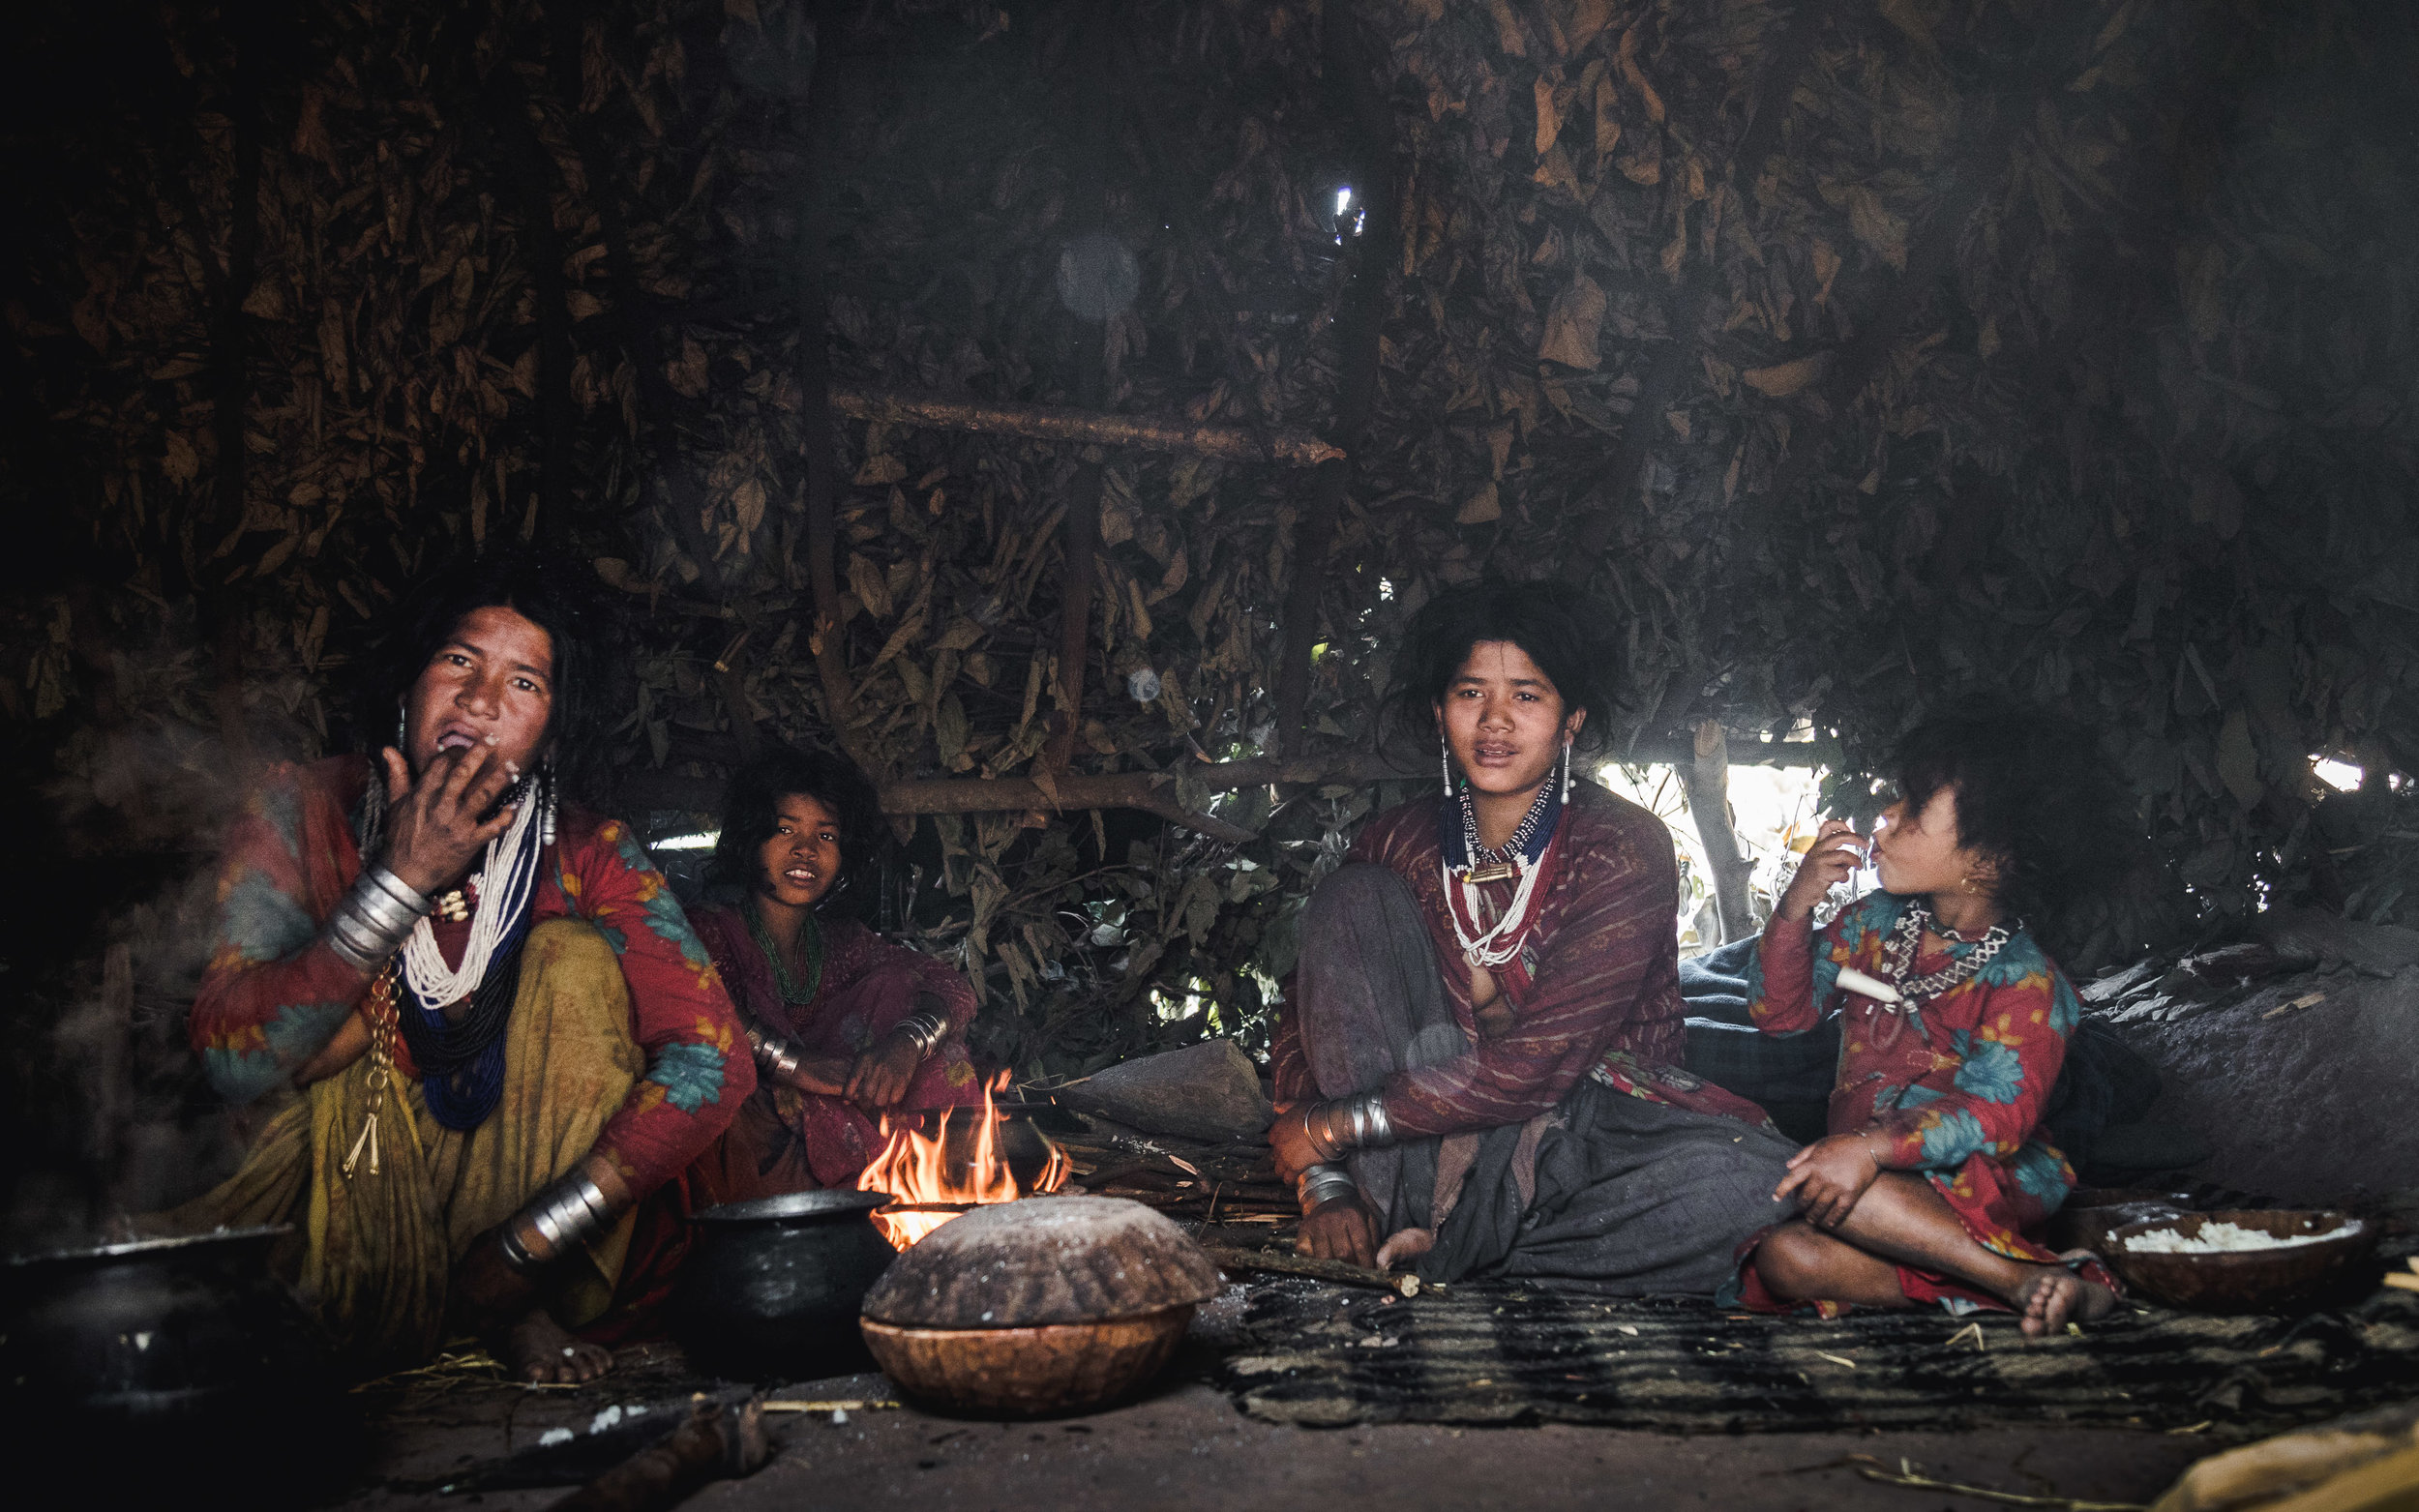   Raute, de laatste nomaden van Nepal    Waar leven de Raute?  